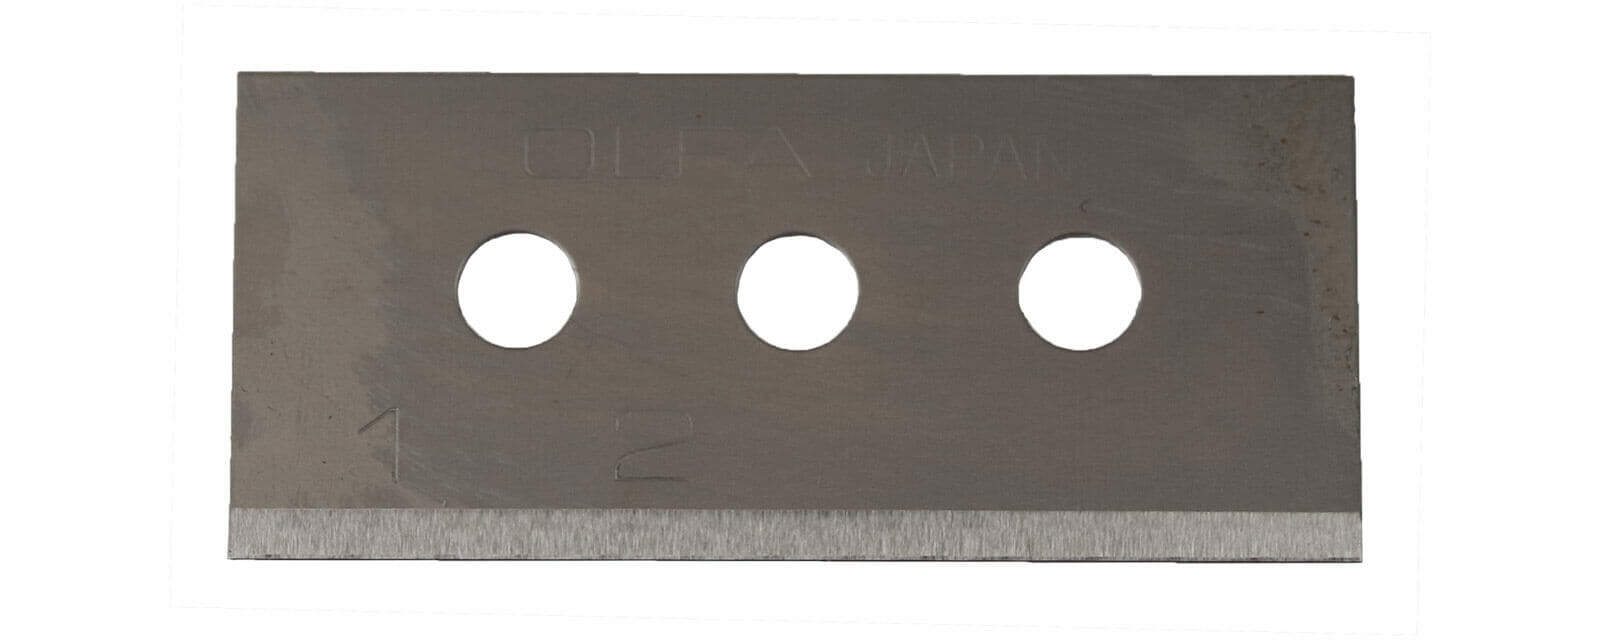 K082-Cuttermesser-Klinge-Rechteck-Ersatzklinge-für-Folienschneider-H041-OLFA-SK10-CURT-tools